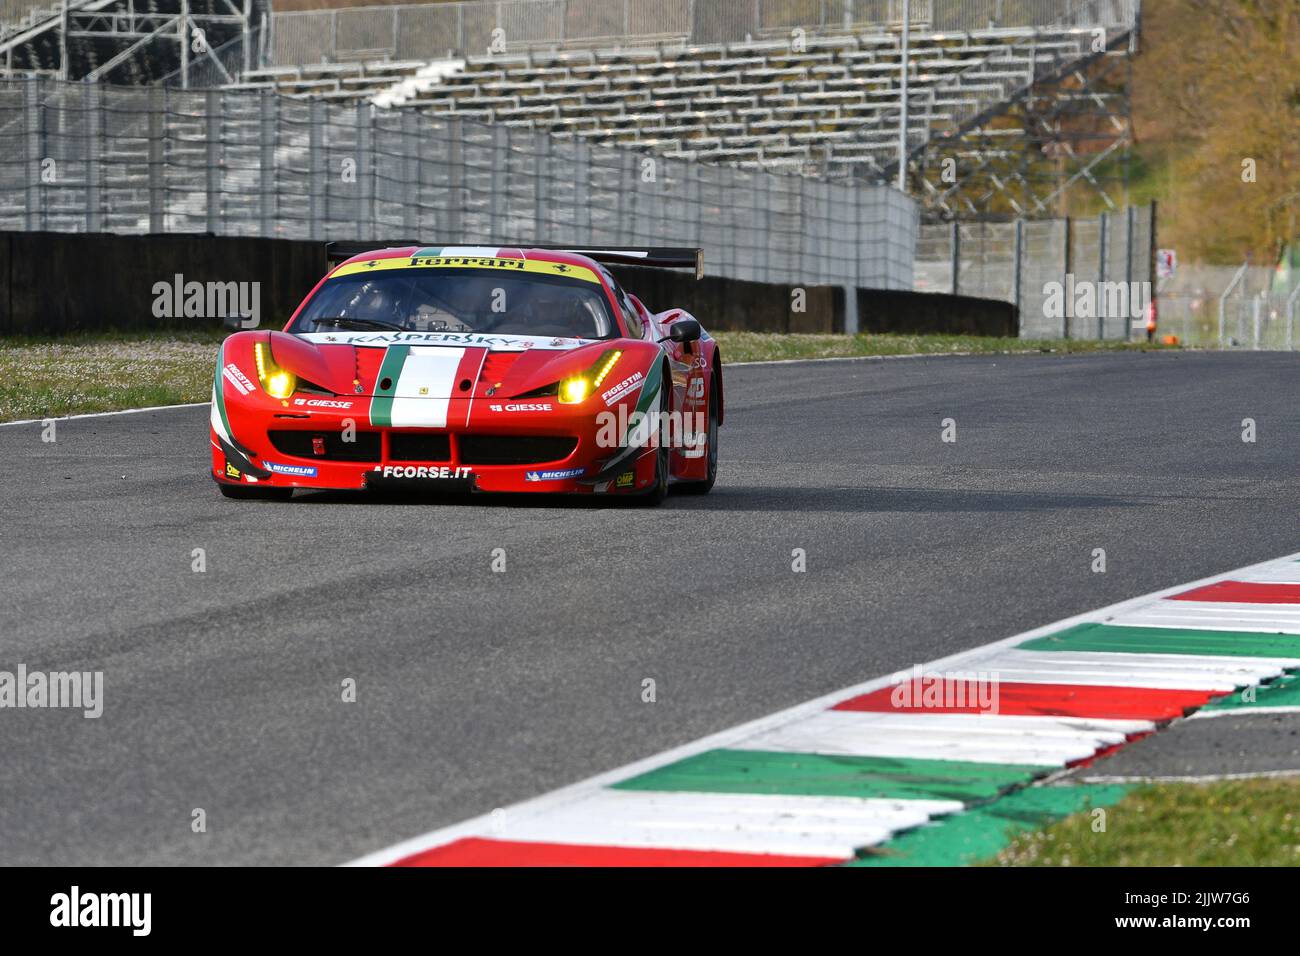 Scarperia, 3 April 2022: Ferrari 458 GTE 2011 in action during Mugello Classic 2022 at Mugello Circuit in Italy. Stock Photo